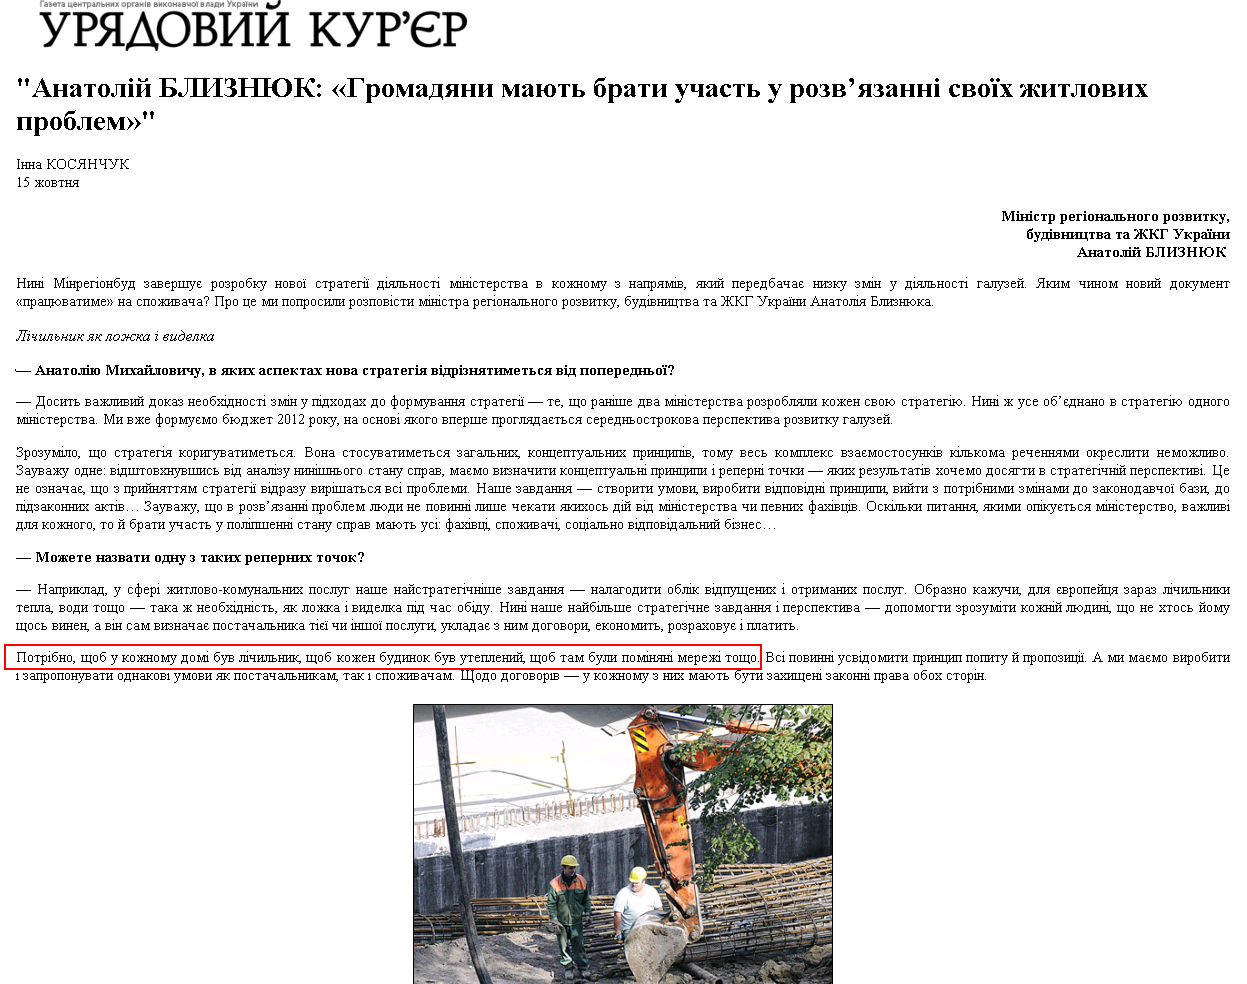 http://www.ukurier.gov.ua/uk/articles/anatolij-bliznyuk-lyudi-mayut-brati-uchast-u-rozvy/p/